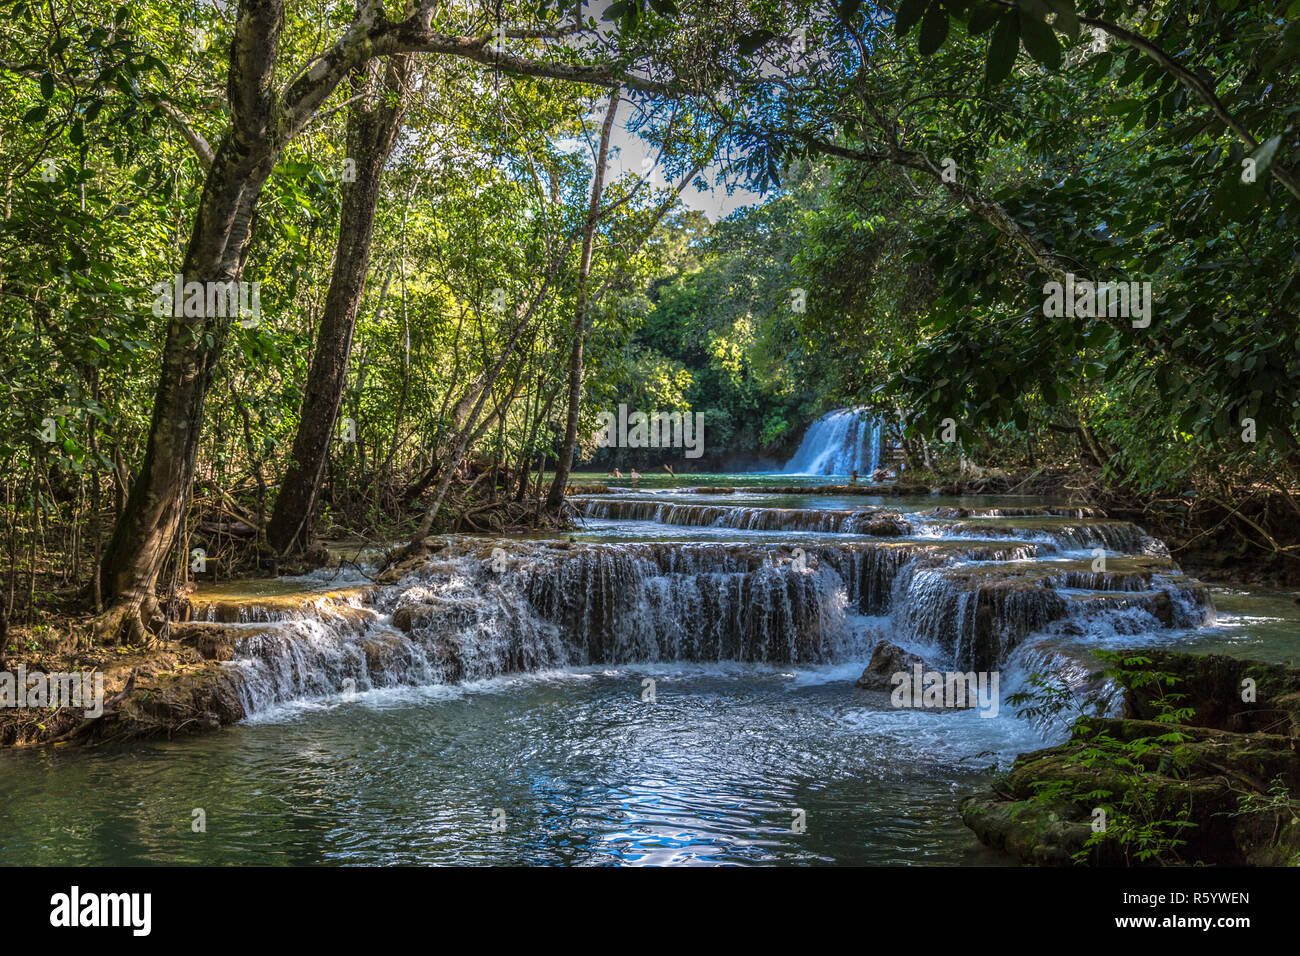 Beautiful natural landscape in Bonito, Brazil Stock Photo